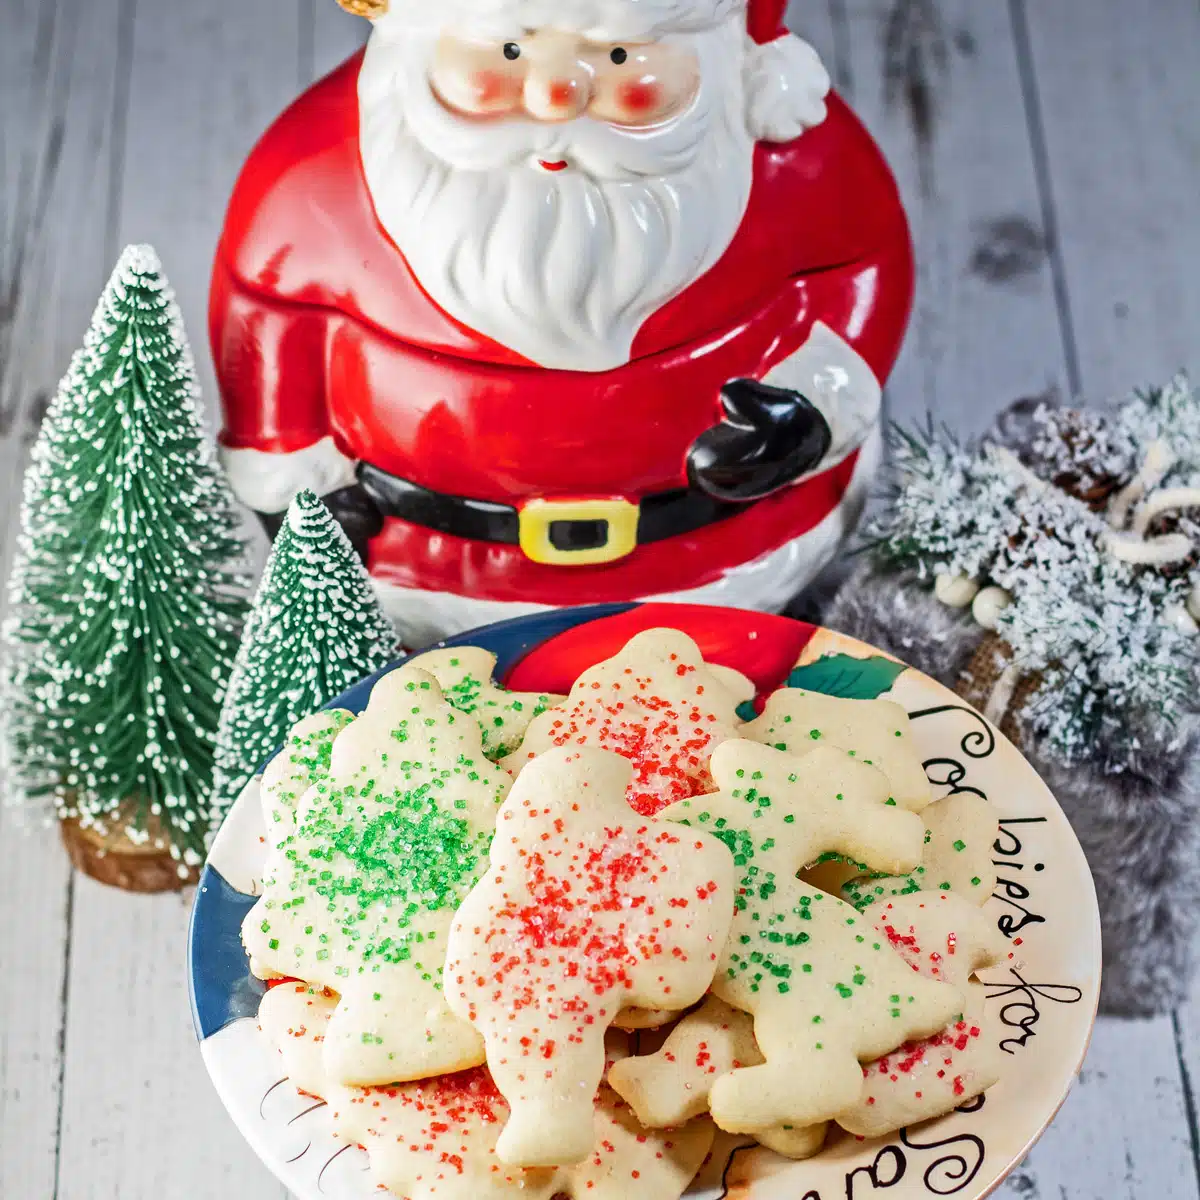 Büyük Büyükannem Ethel'den en iyi pudra şekerli kurabiye eski tarifi, Noel Baba tabağı için kurabiyelerde pişirilip servis edilir.